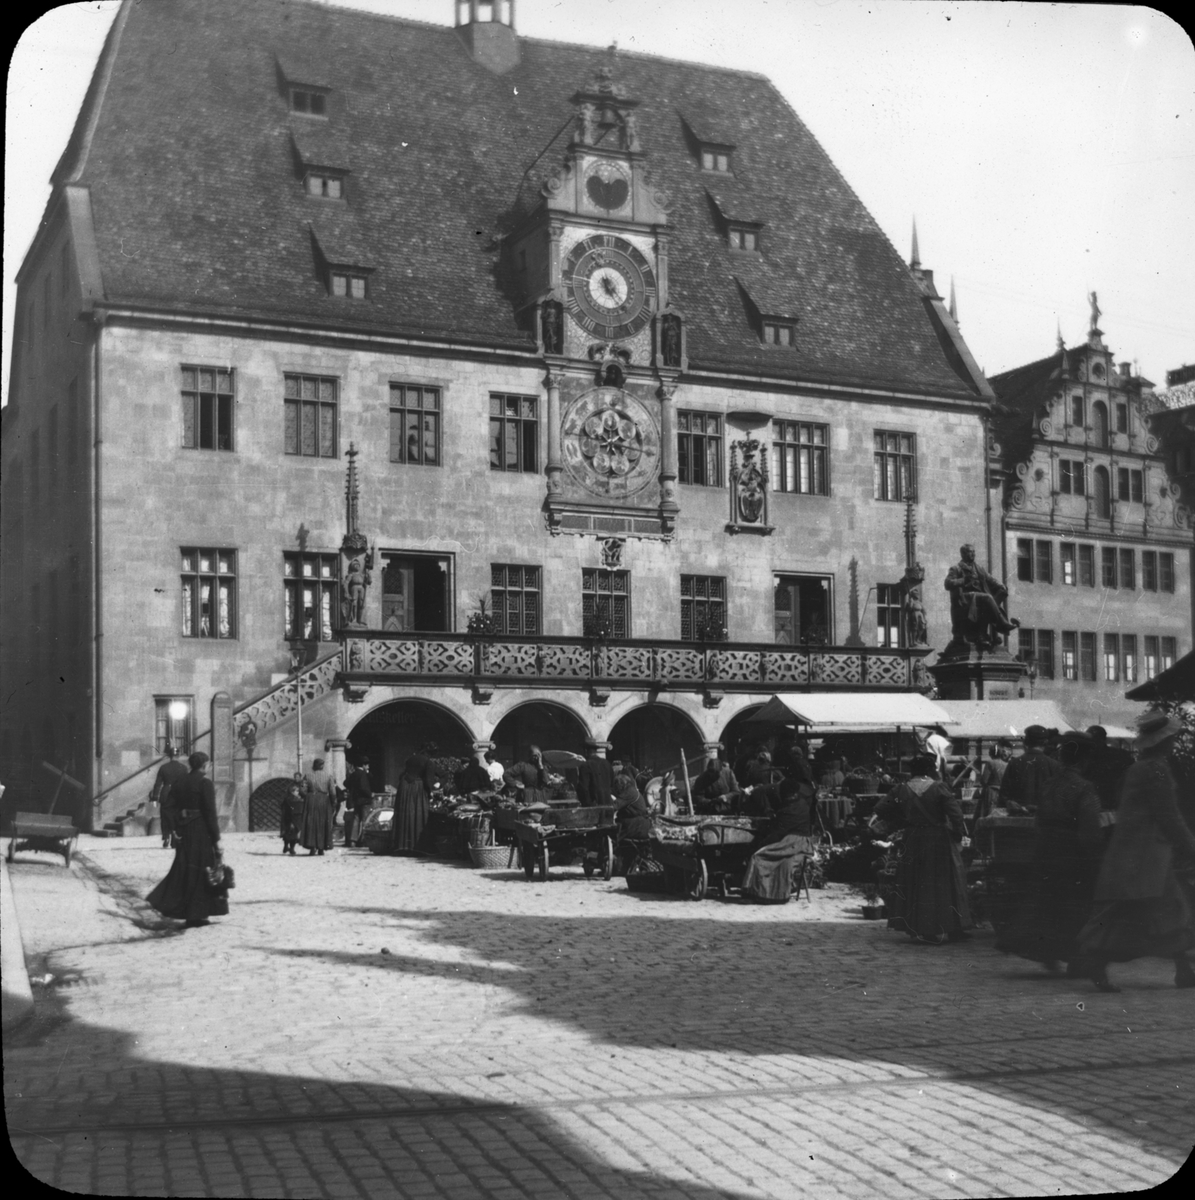 Skioptikonbild med motiv av marknad framför rådhuset i Heilbronn.
Bilden har förvarats i kartong märkt: Resan 1908. Heilbronn 4. Wimpfen 5. Text på bild: "Marplats".